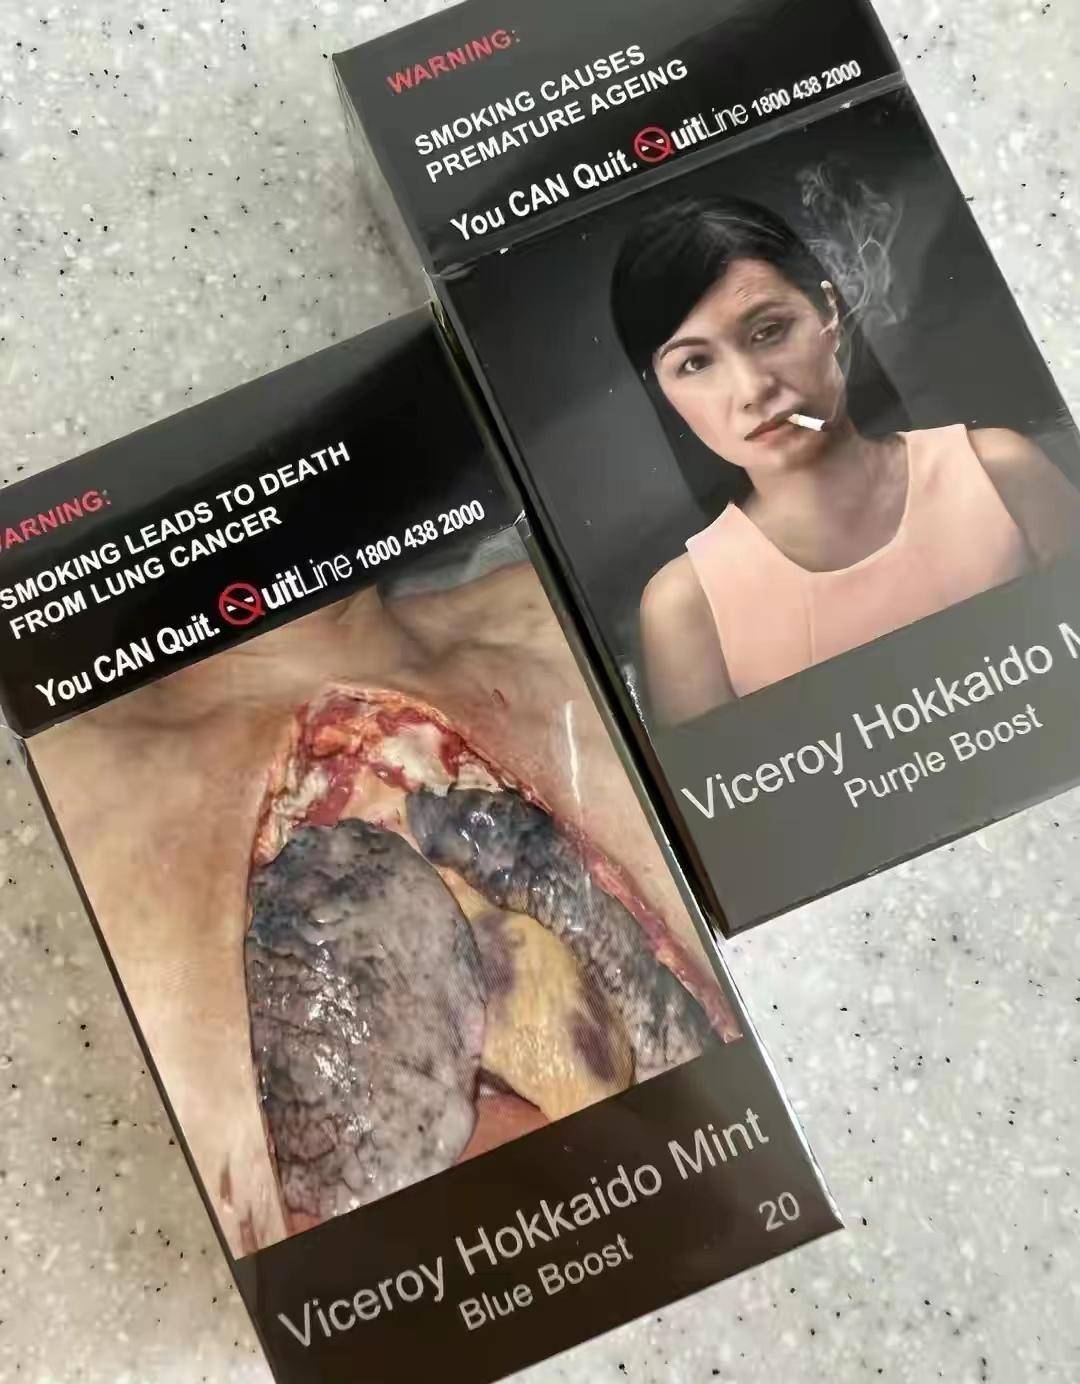 国外烟恶心包装图片